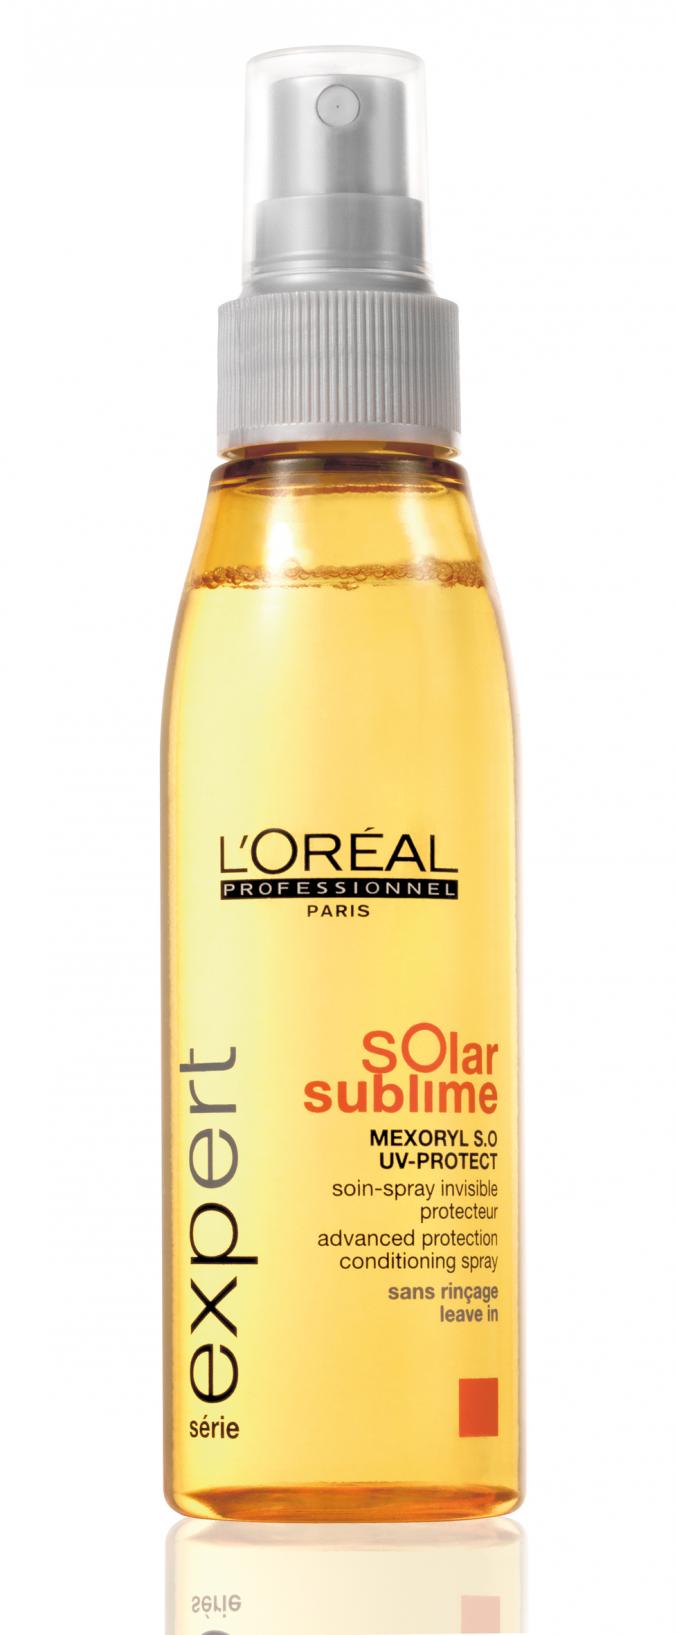 ANTI-UV: Solar Sublime (L'Oréal Professionnel)